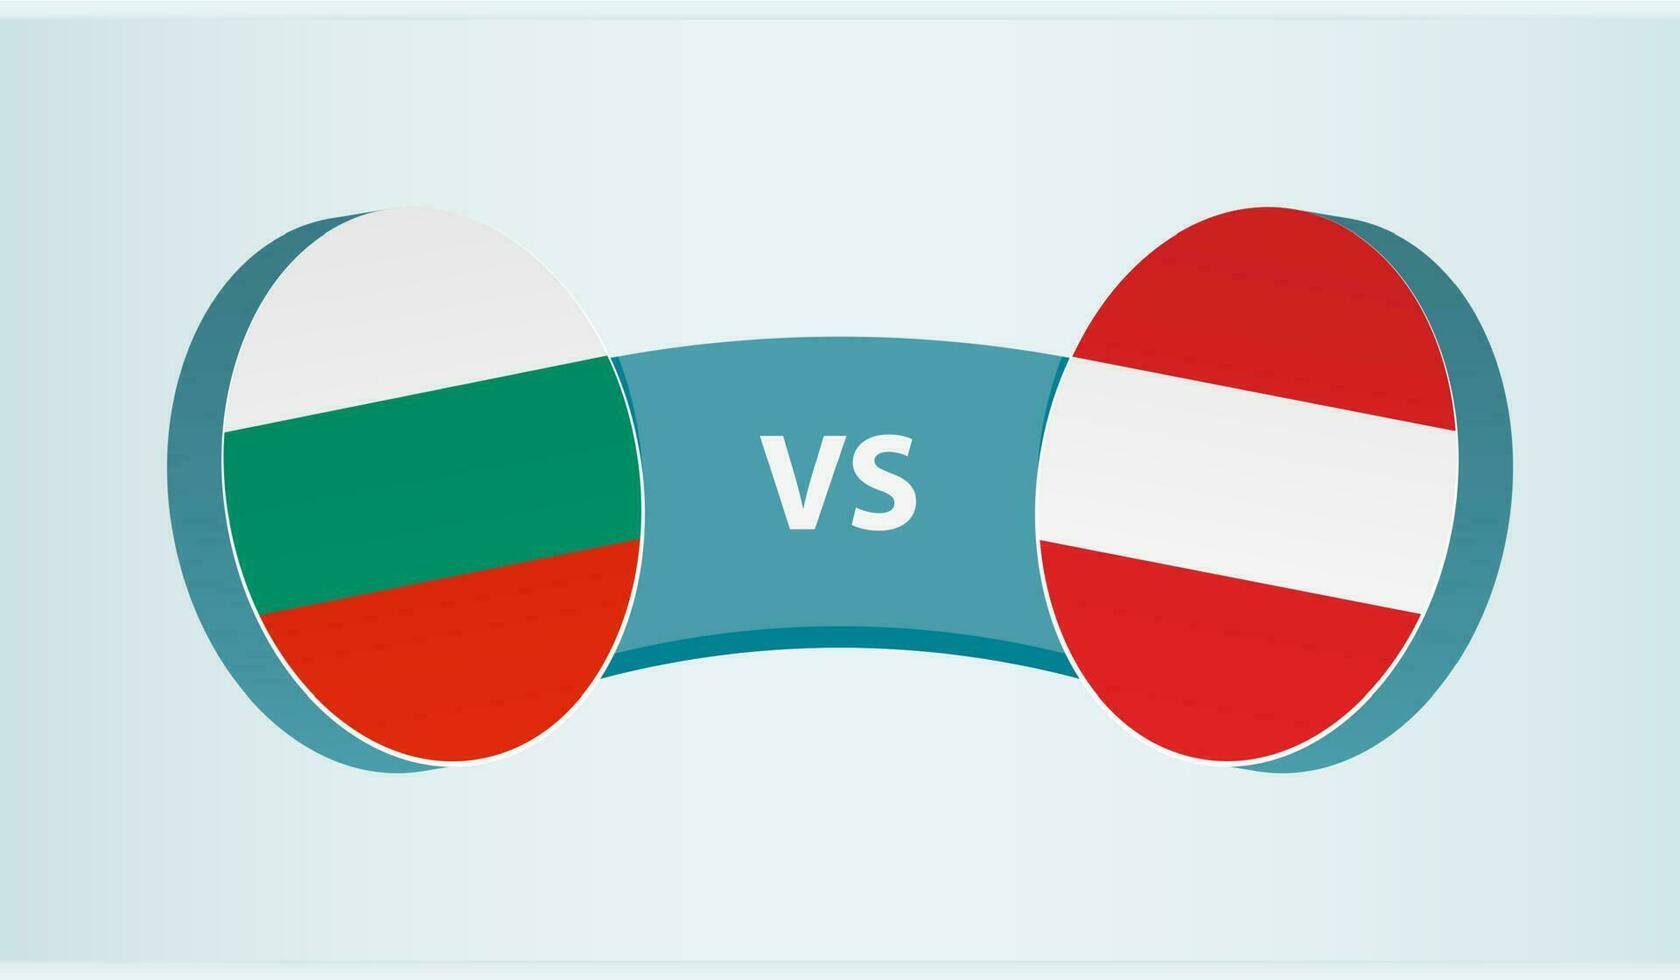 Bulgaria versus Austria, team sports competition concept. vector